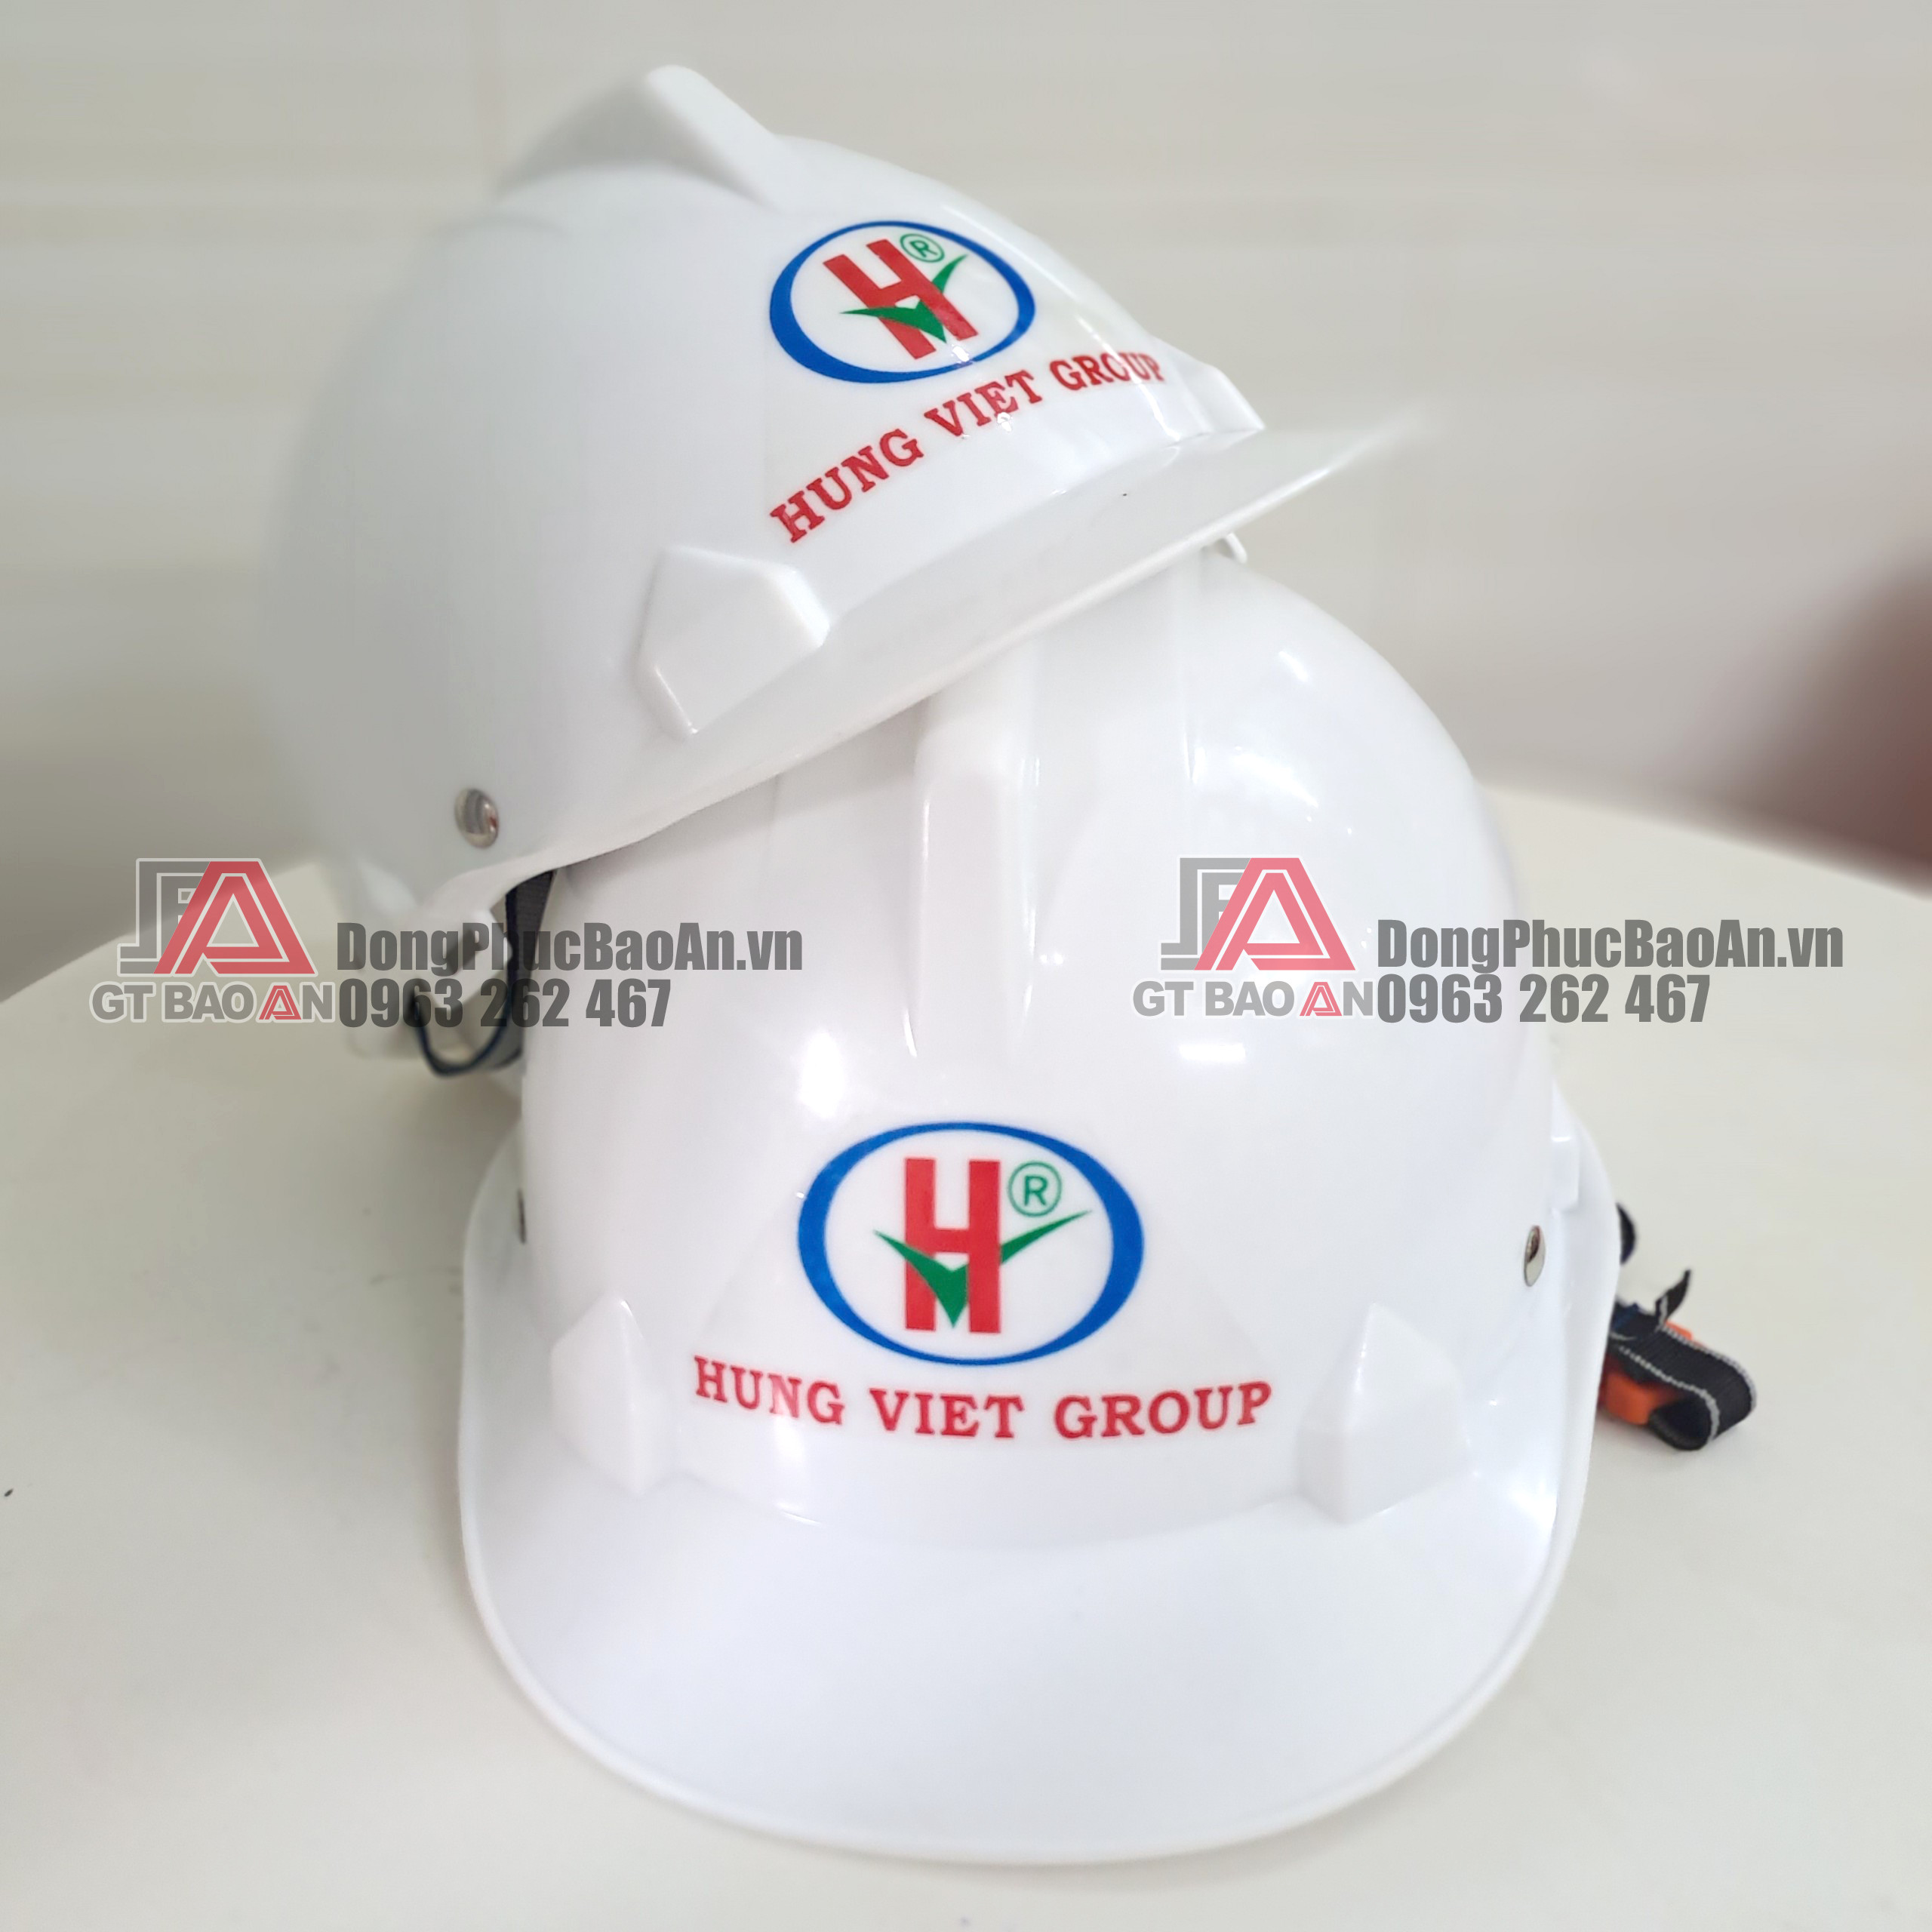 Xưởng làm mũ bảo hộ trắng có in logo theo yêu cầu giá rẻ TPHCM - Hưng Việt Group 